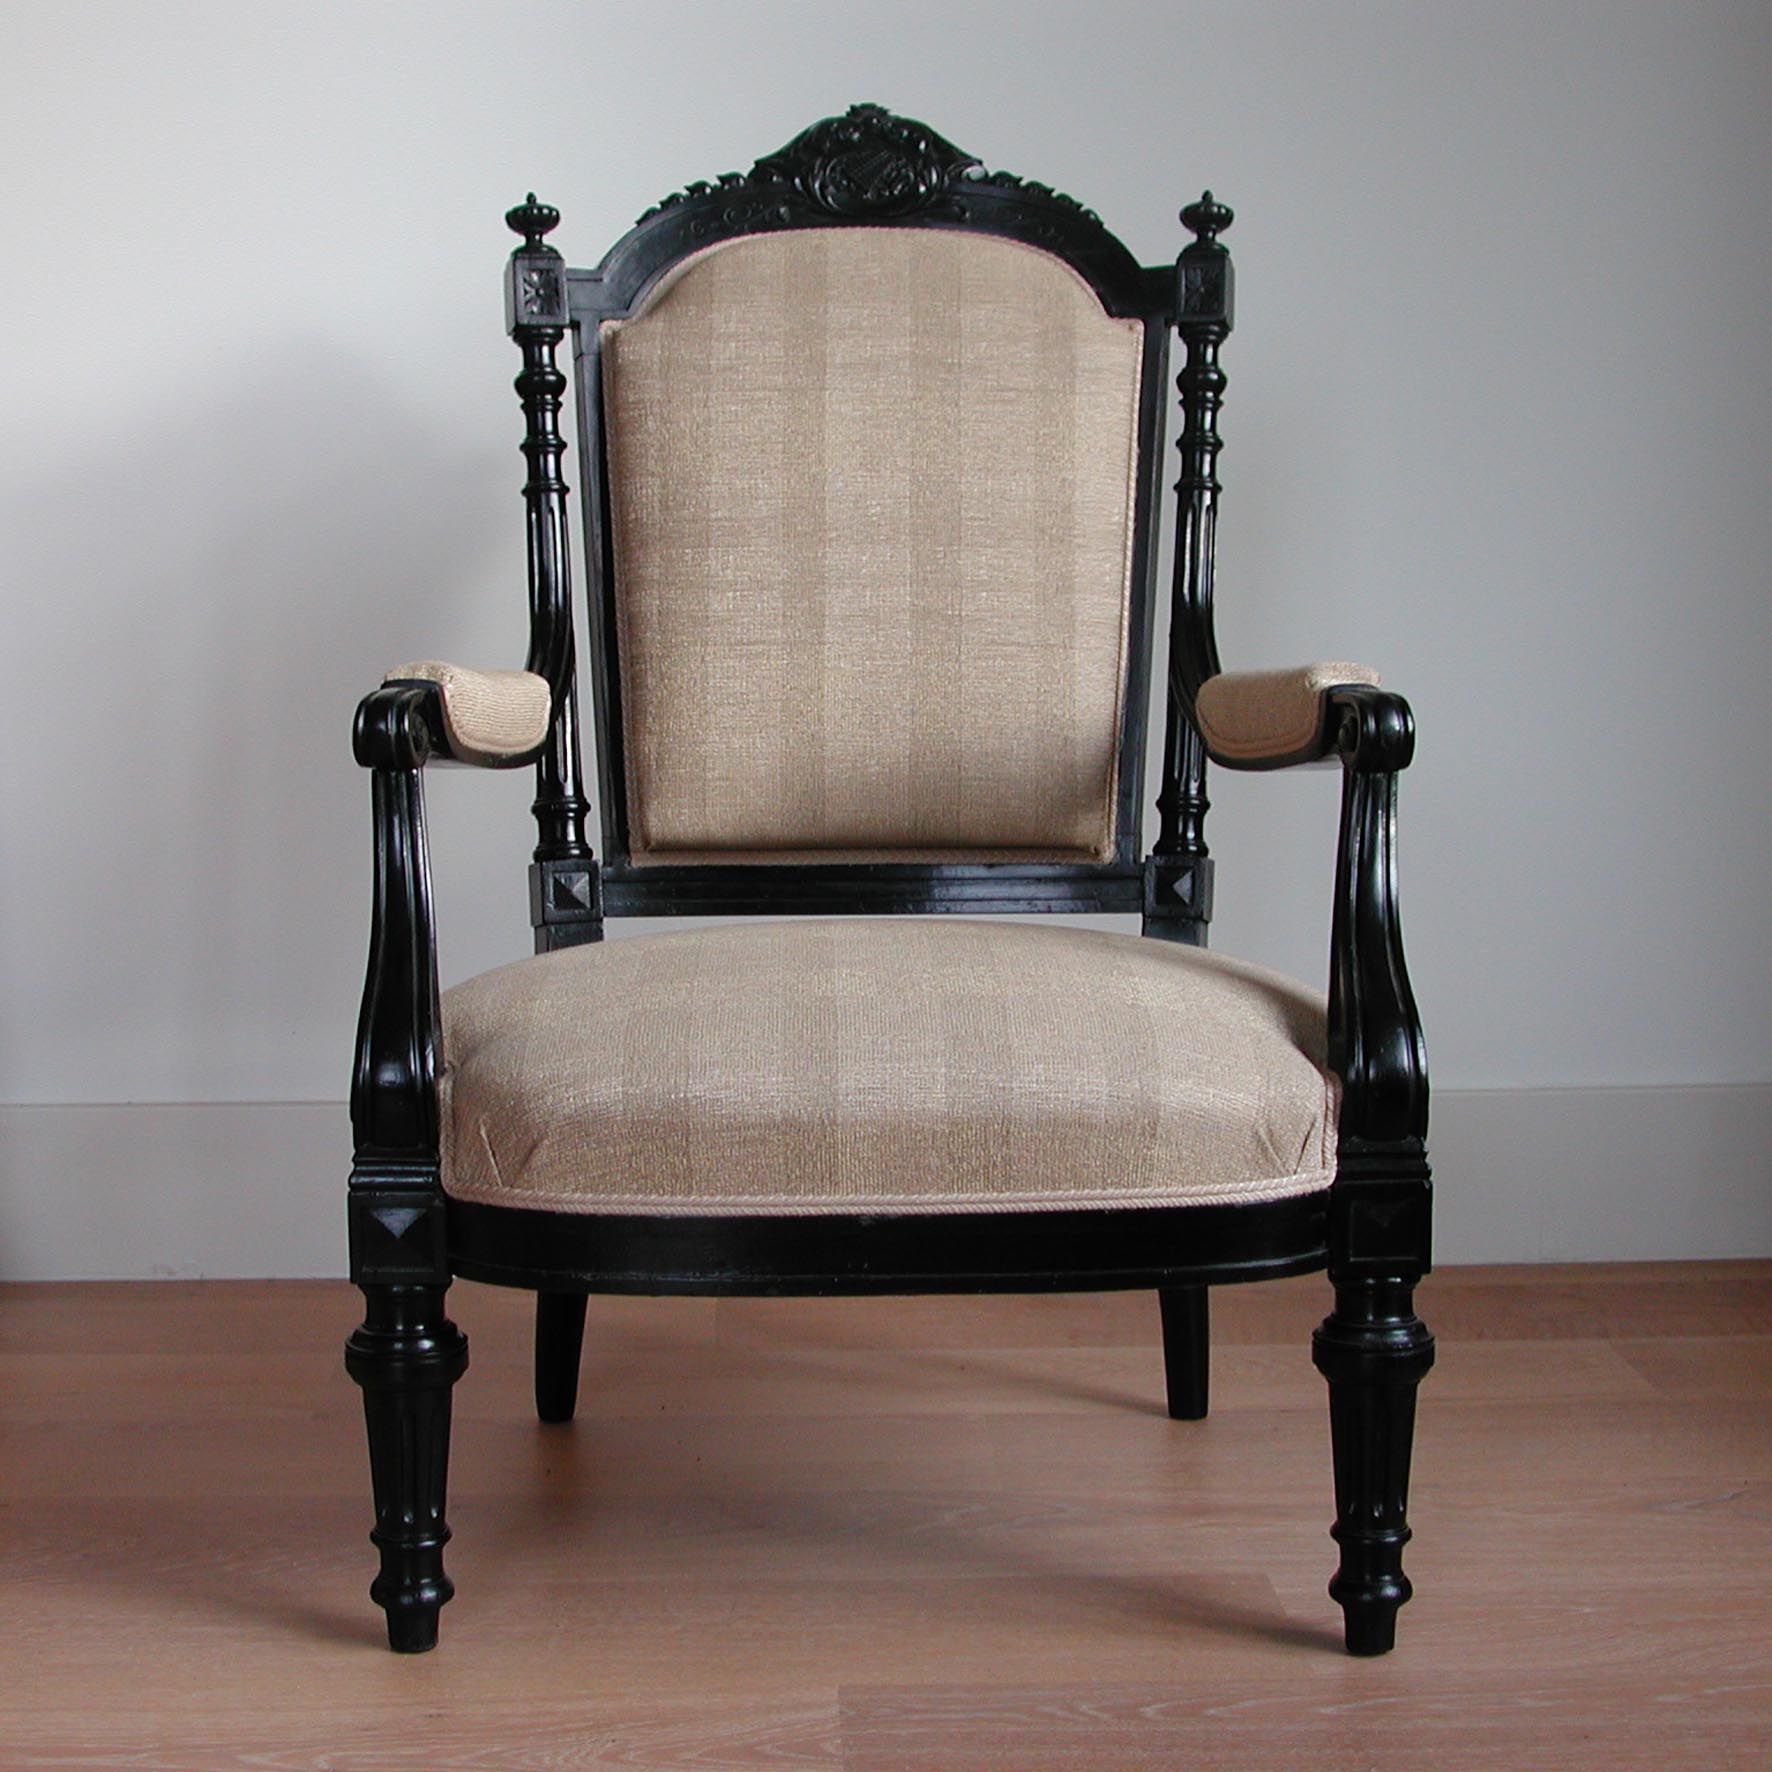 S&K meubelen-Twee zwartgepolitoerde armfauteuils style Louis XVI ca. 1880-1890 (set) - Schreuder-kraan.shop